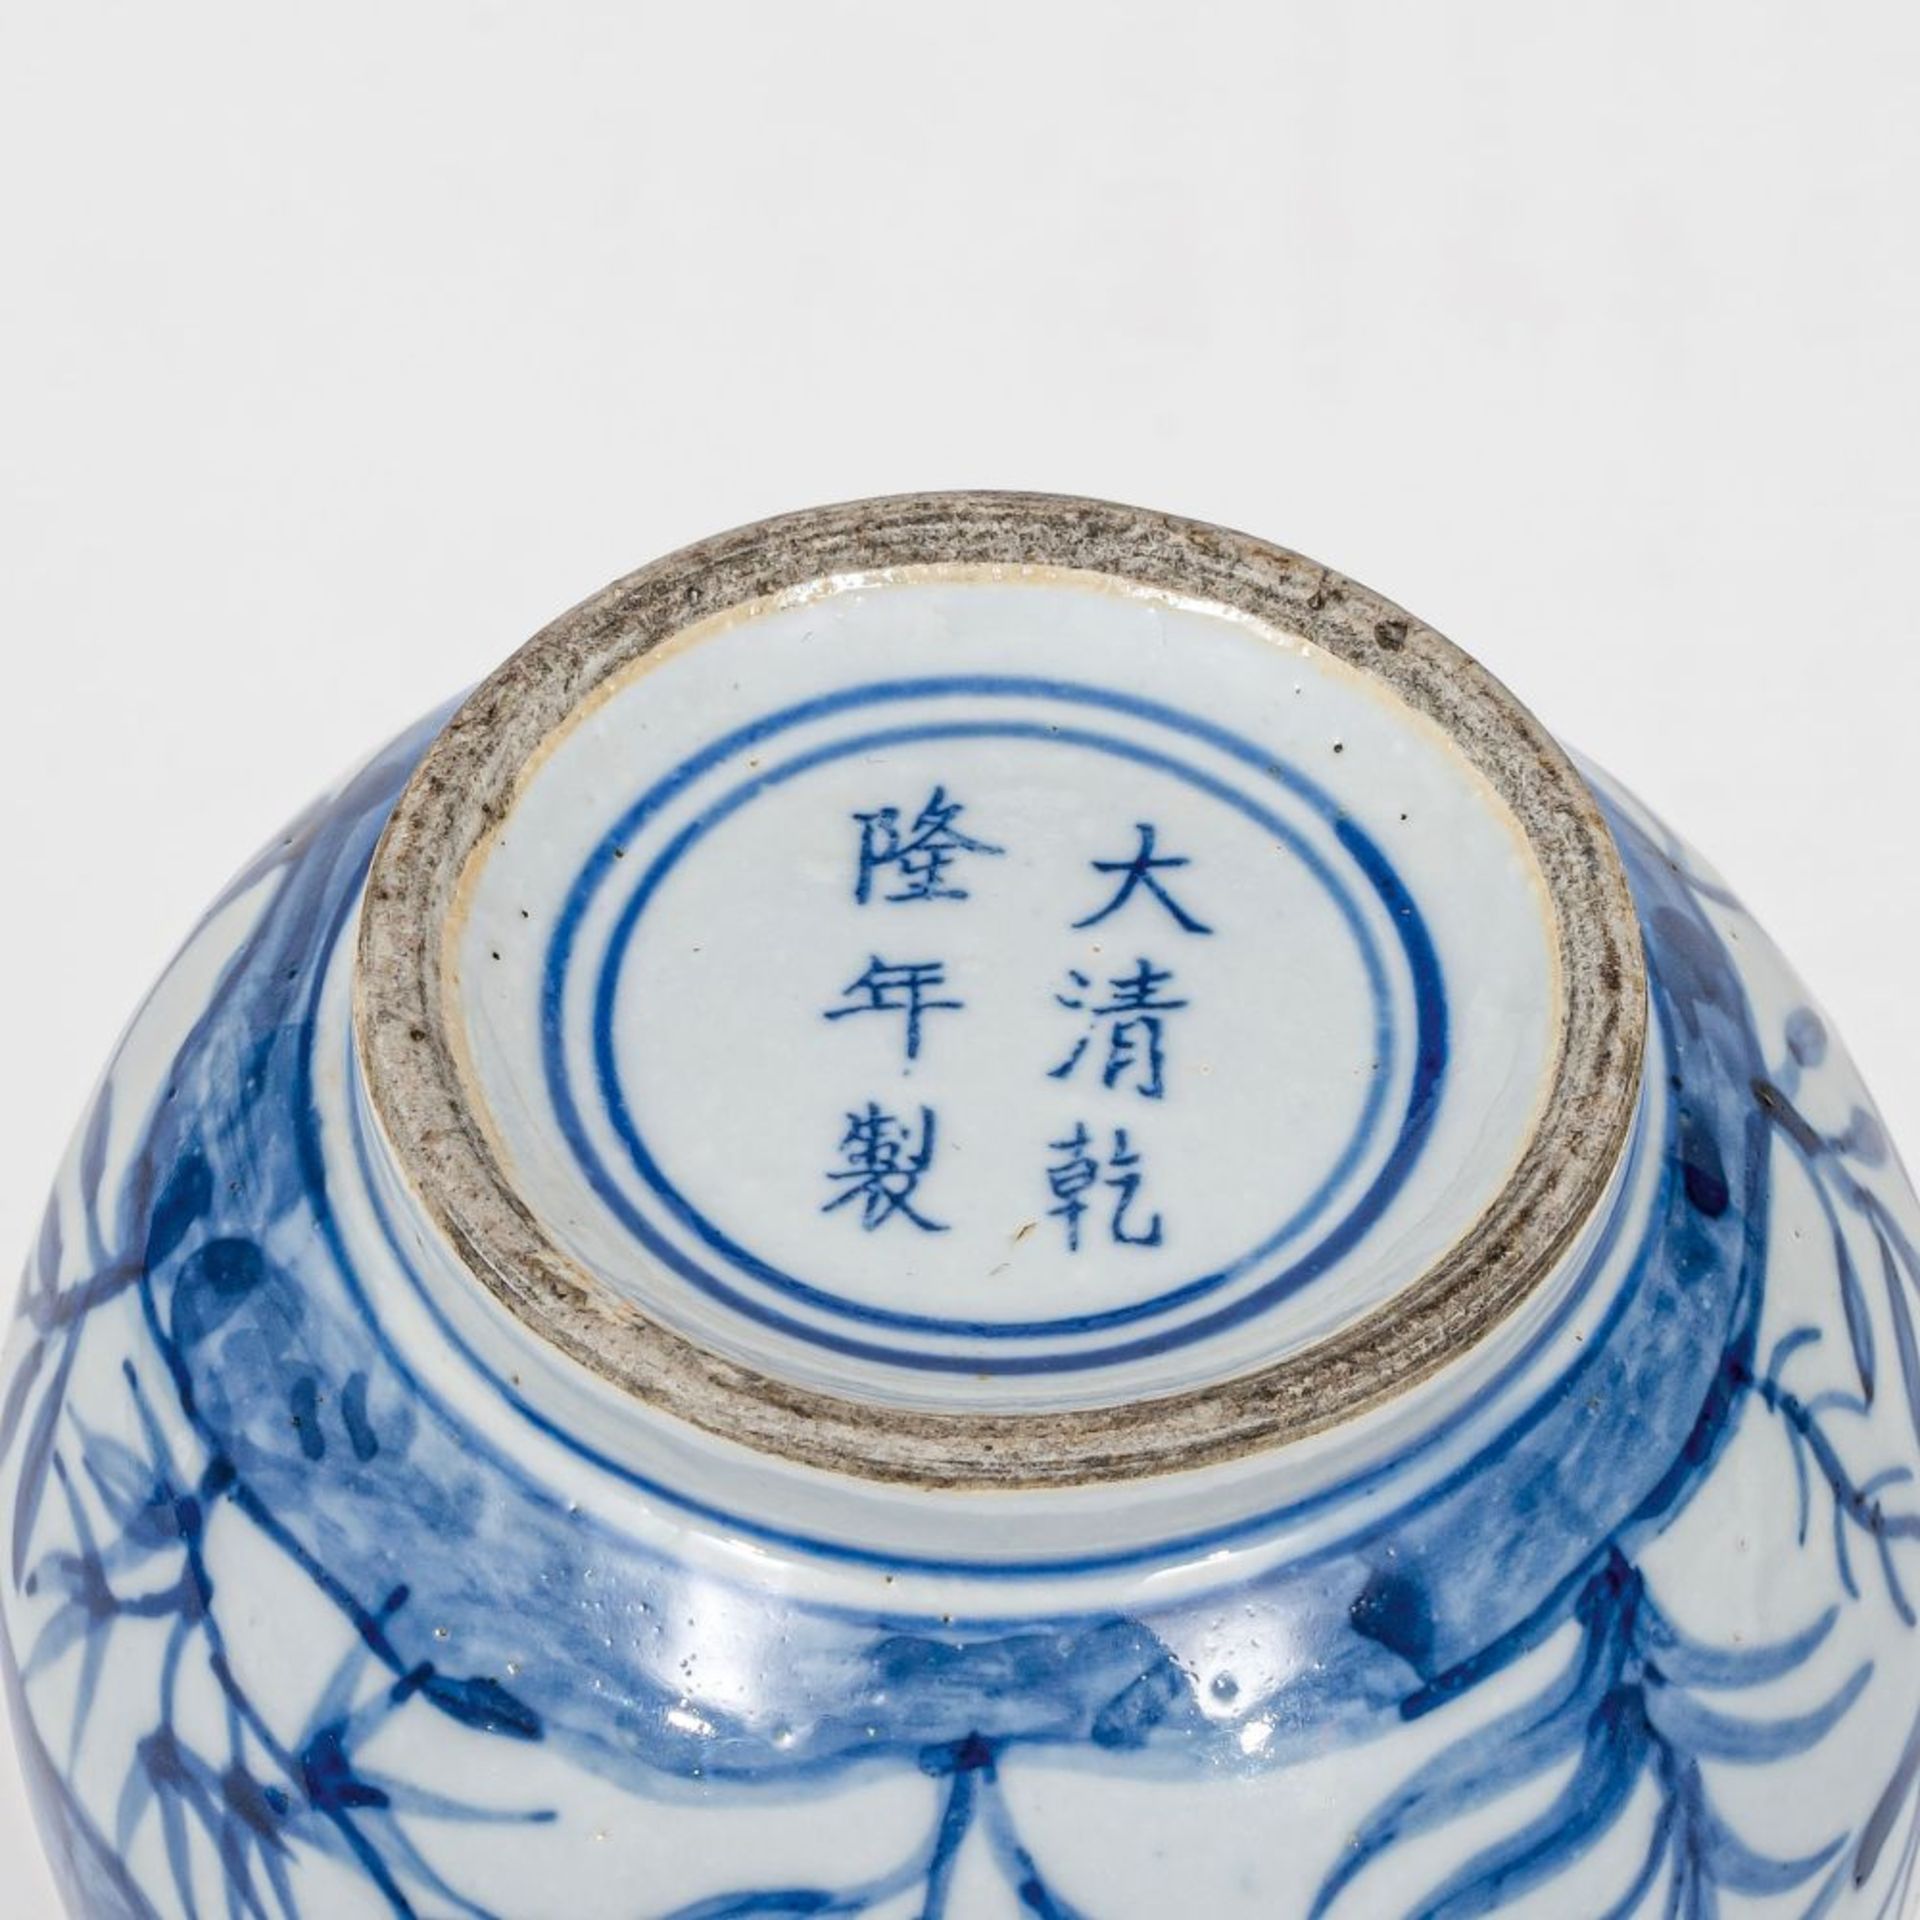 Blau-weiße Knoblauch-Vase. - Bild 2 aus 2